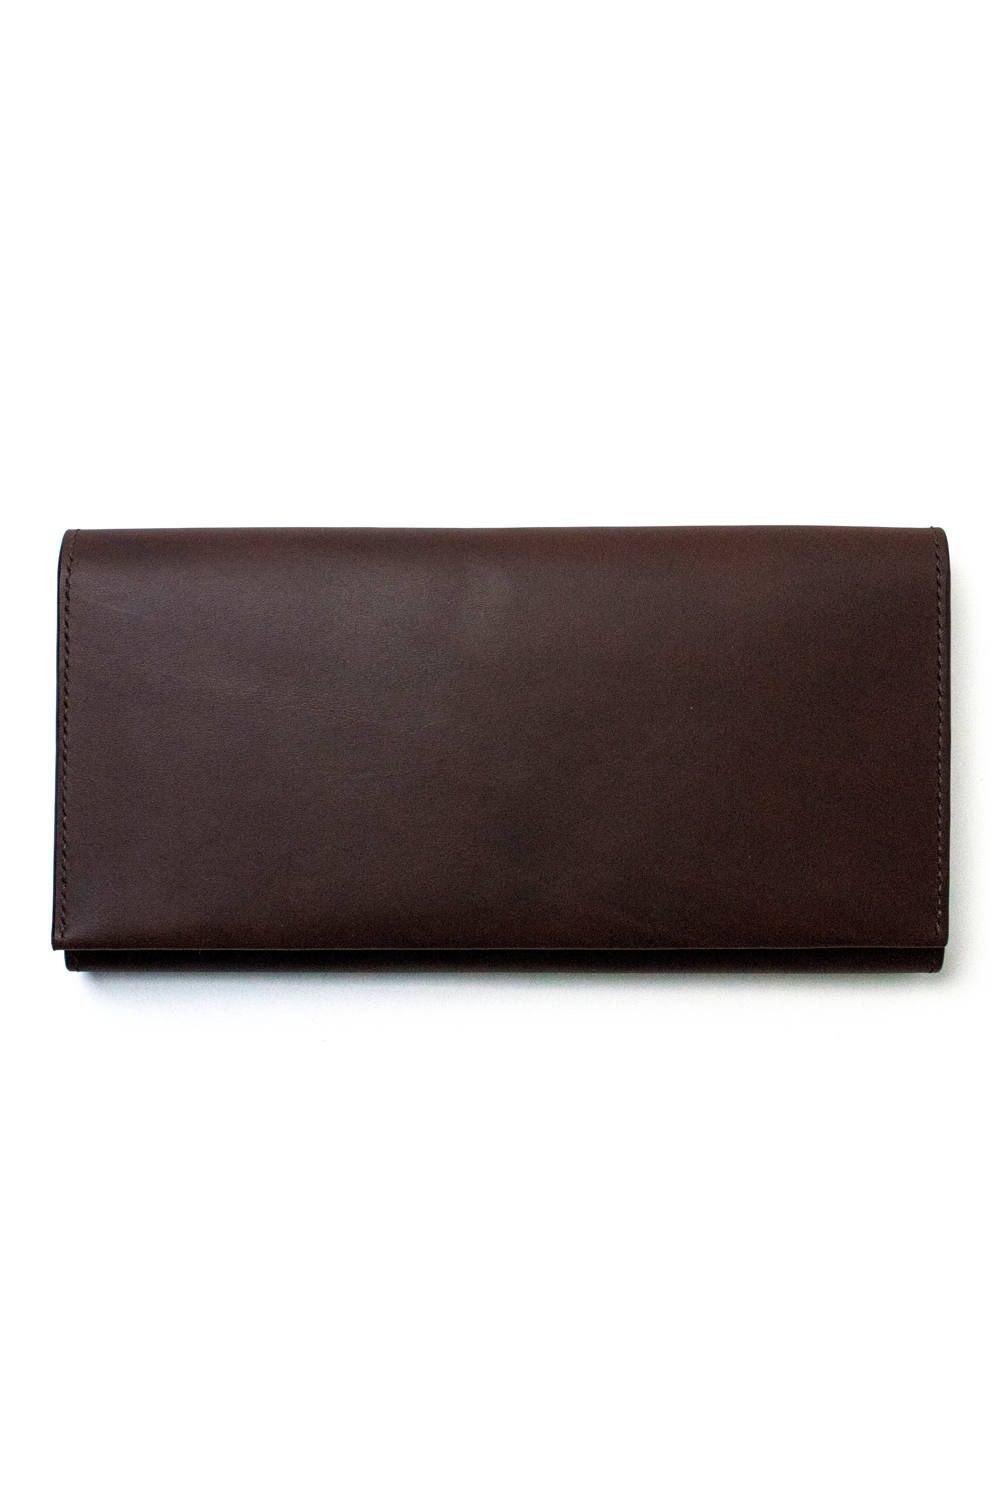 NIBUR - LERAY - Long wallet [BROWN] / ルレイ - 長財布 [ブラウン